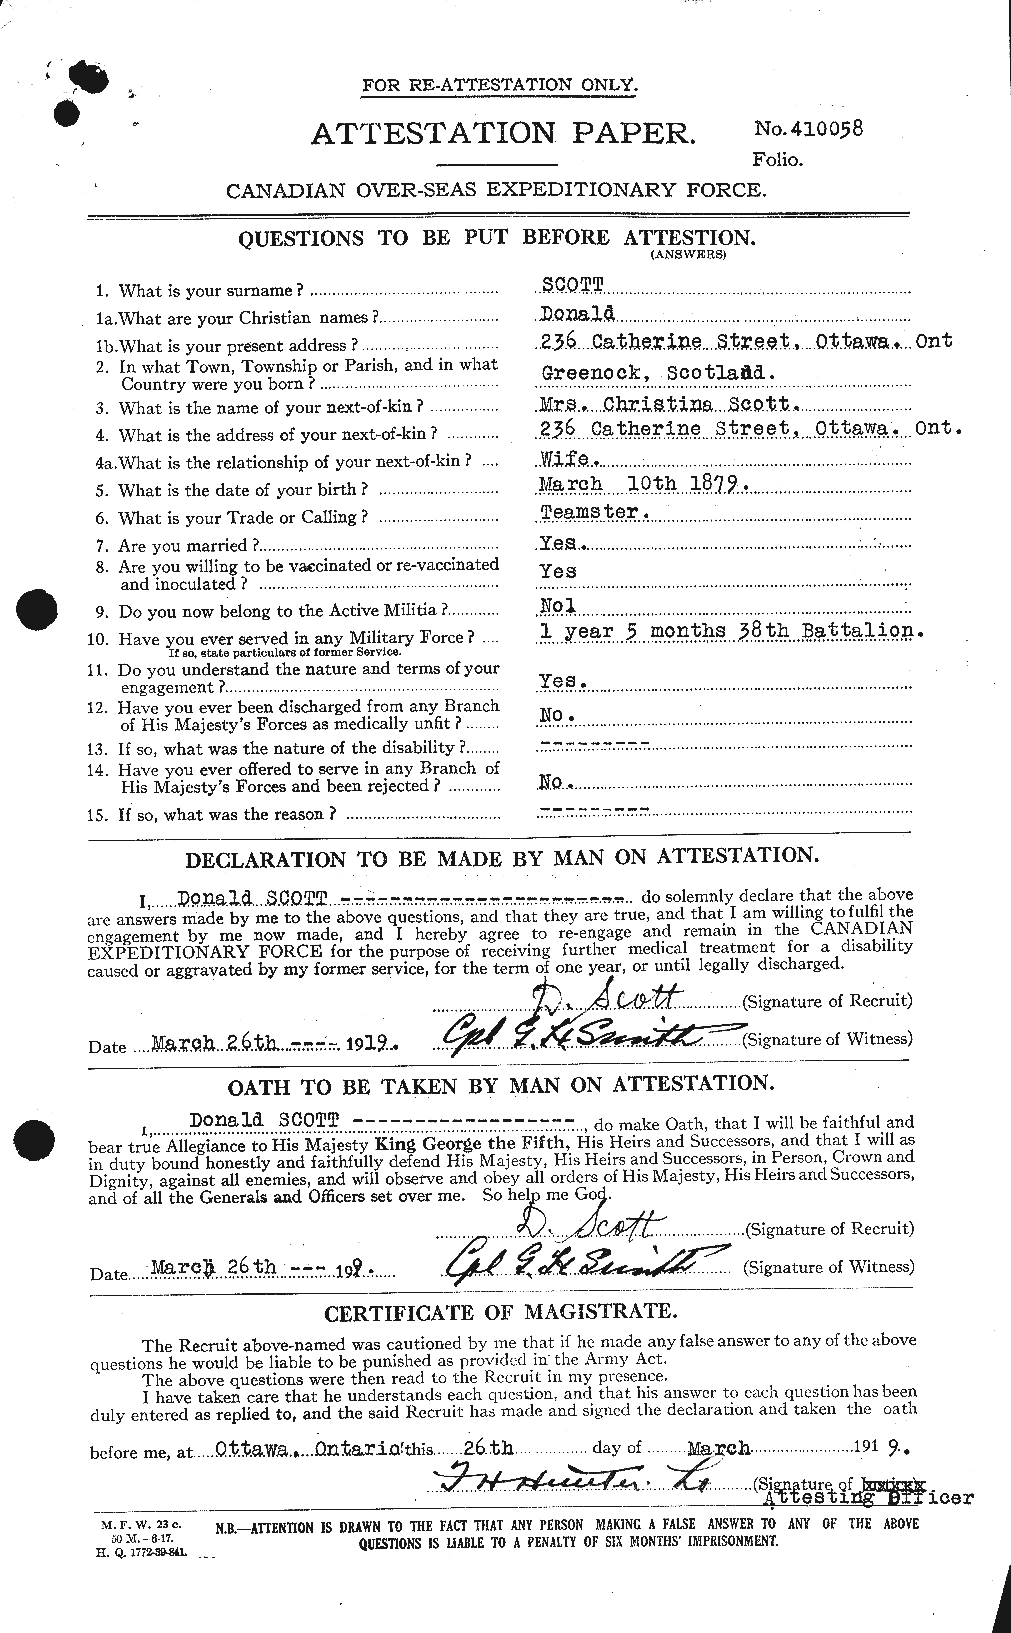 Dossiers du Personnel de la Première Guerre mondiale - CEC 085361a